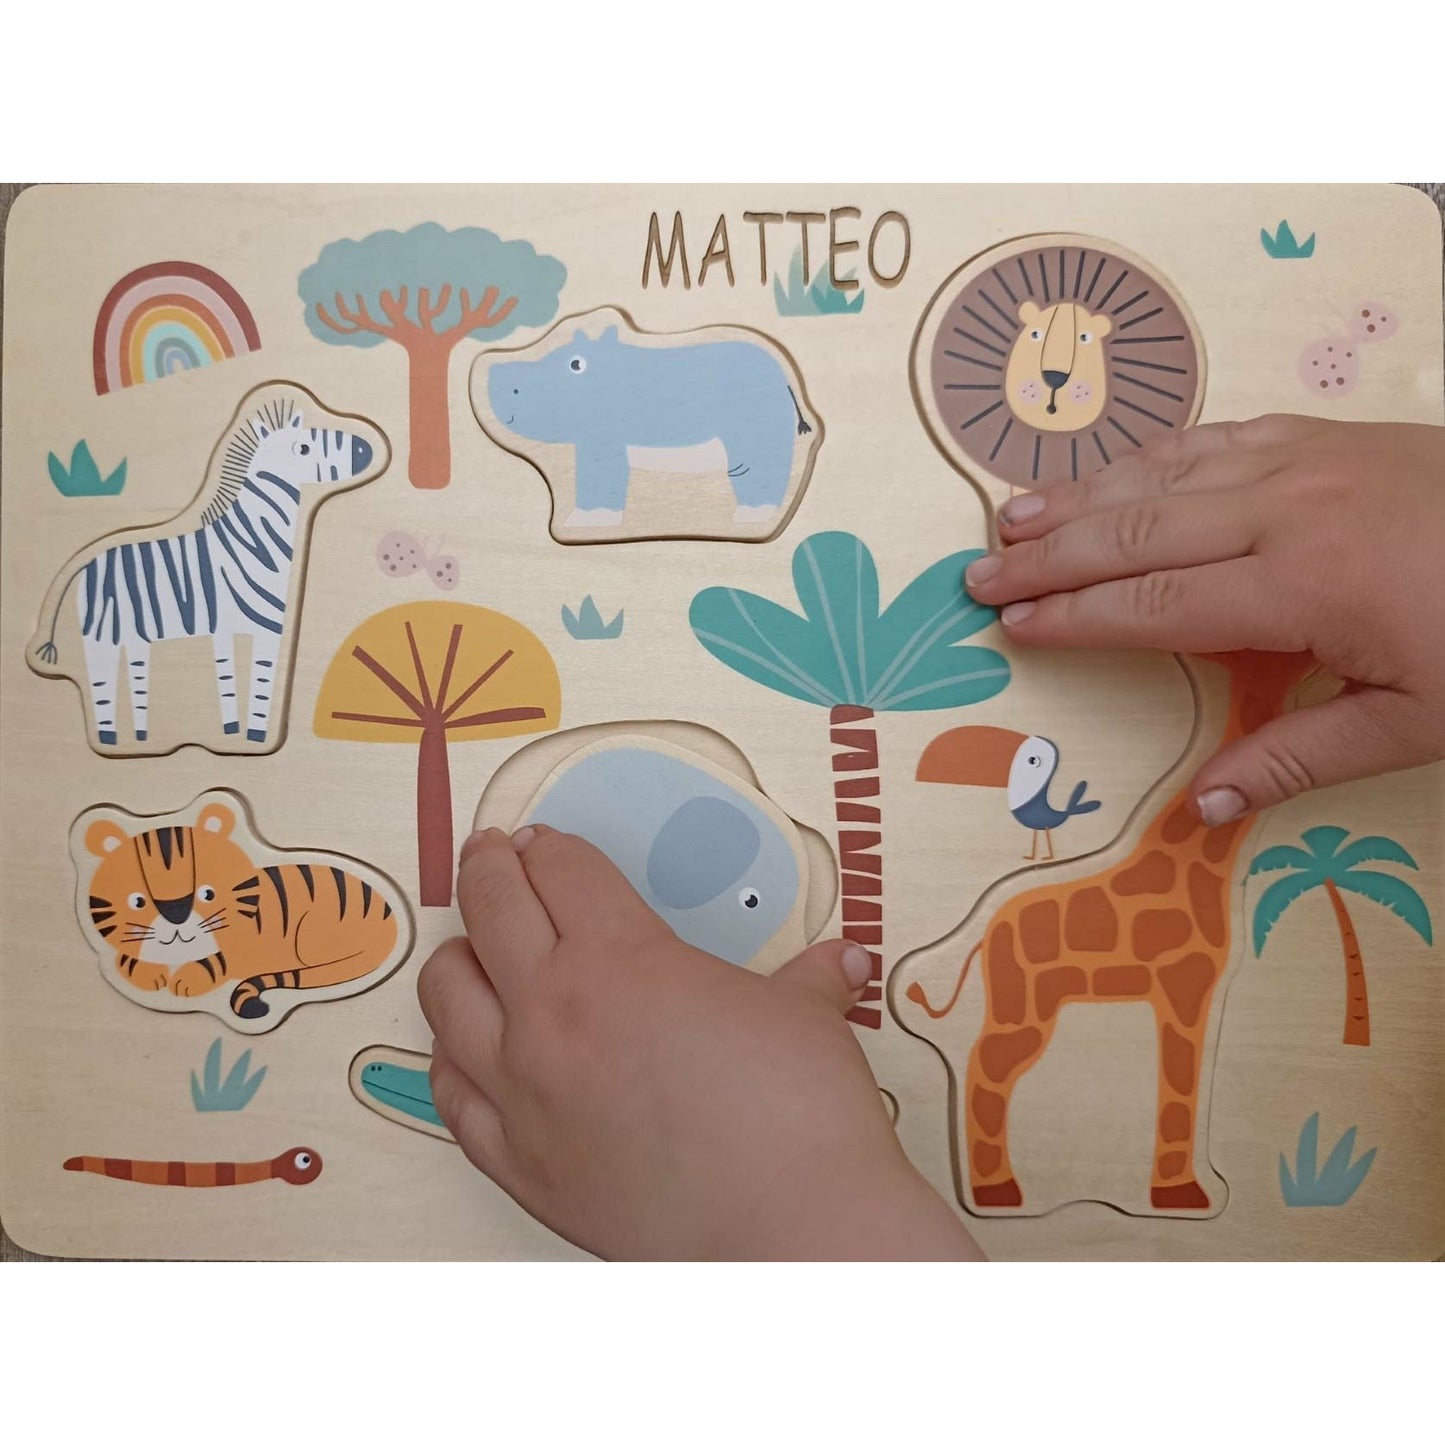 JETZT NEU Personalisiert gelasert Setzpuzzle Holz  Wildtiere Löwe Zebra Puzzle für Kinder Holzspielzeug Steckpuzzle Maße: ca. 30 x 22 x 1 cm